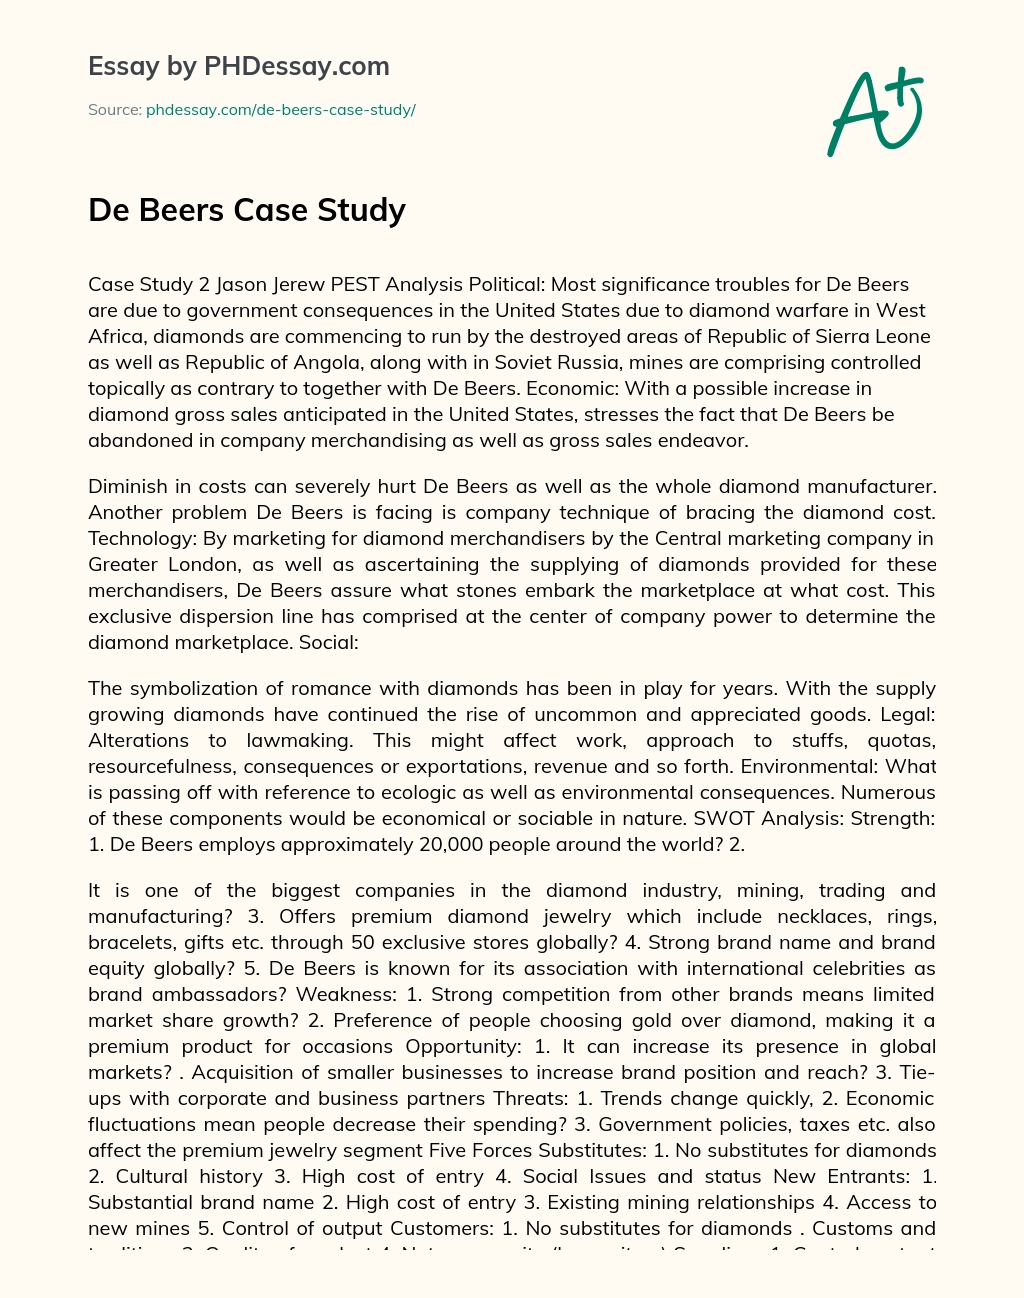 De Beers Case Study essay